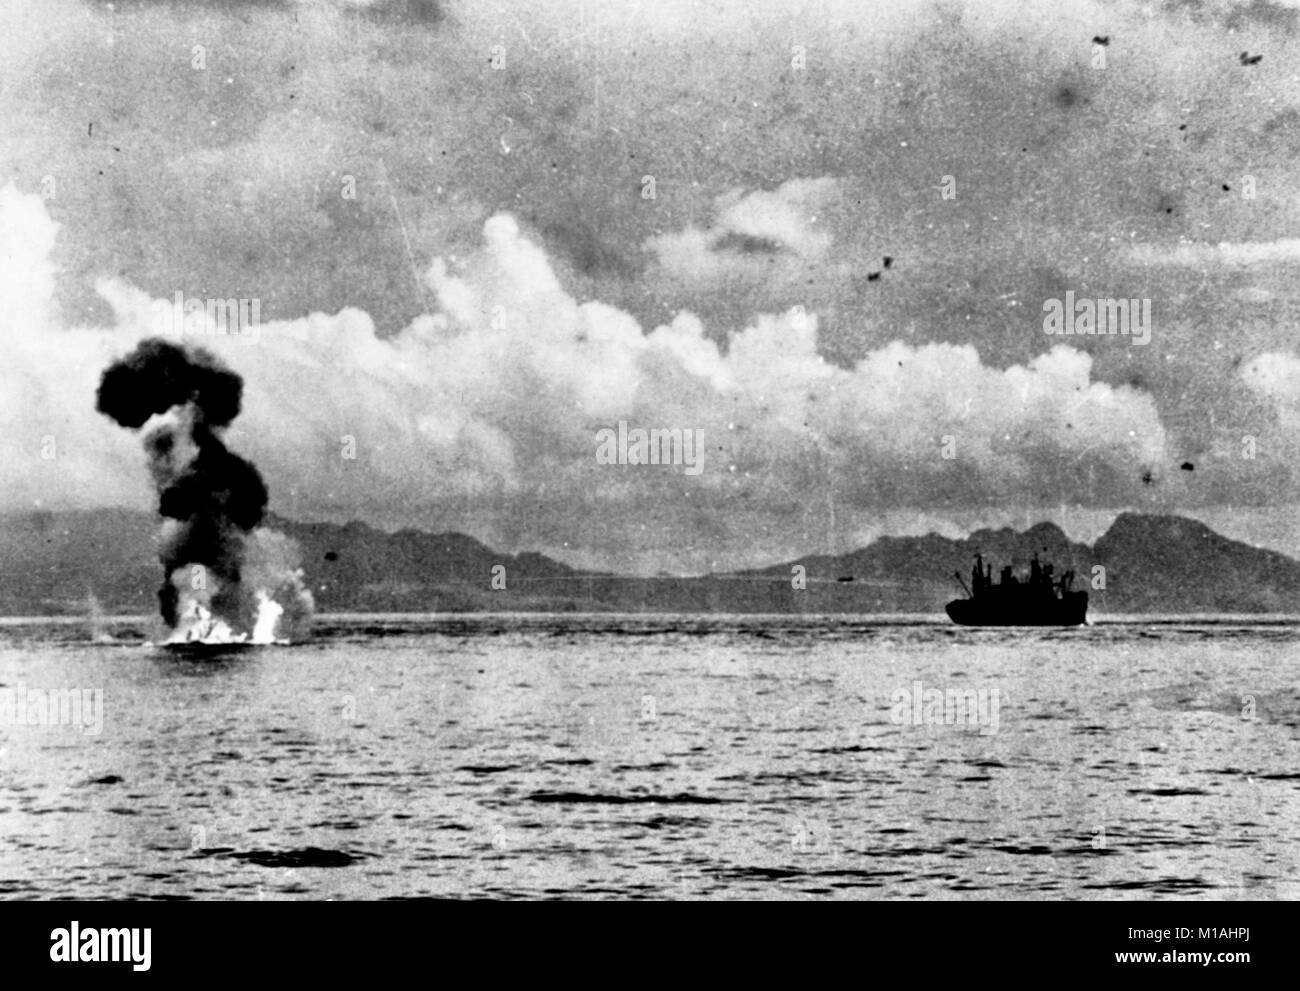 Un Mitsubushi Japonais G4M 'Betty' brûlures d'aéronefs sur l'eau après avoir été abattu par des tirs antiaériens pendant une attaque sur les transports entre Guadalcanal et Tulagi, 7-8 août 1942. Guadalcanal est dans l'arrière-plan, avec les hauteurs au-dessus de Cap Esperance à la droite. Remarque Le G4M en vol au-dessus et à gauche du transport. Banque D'Images